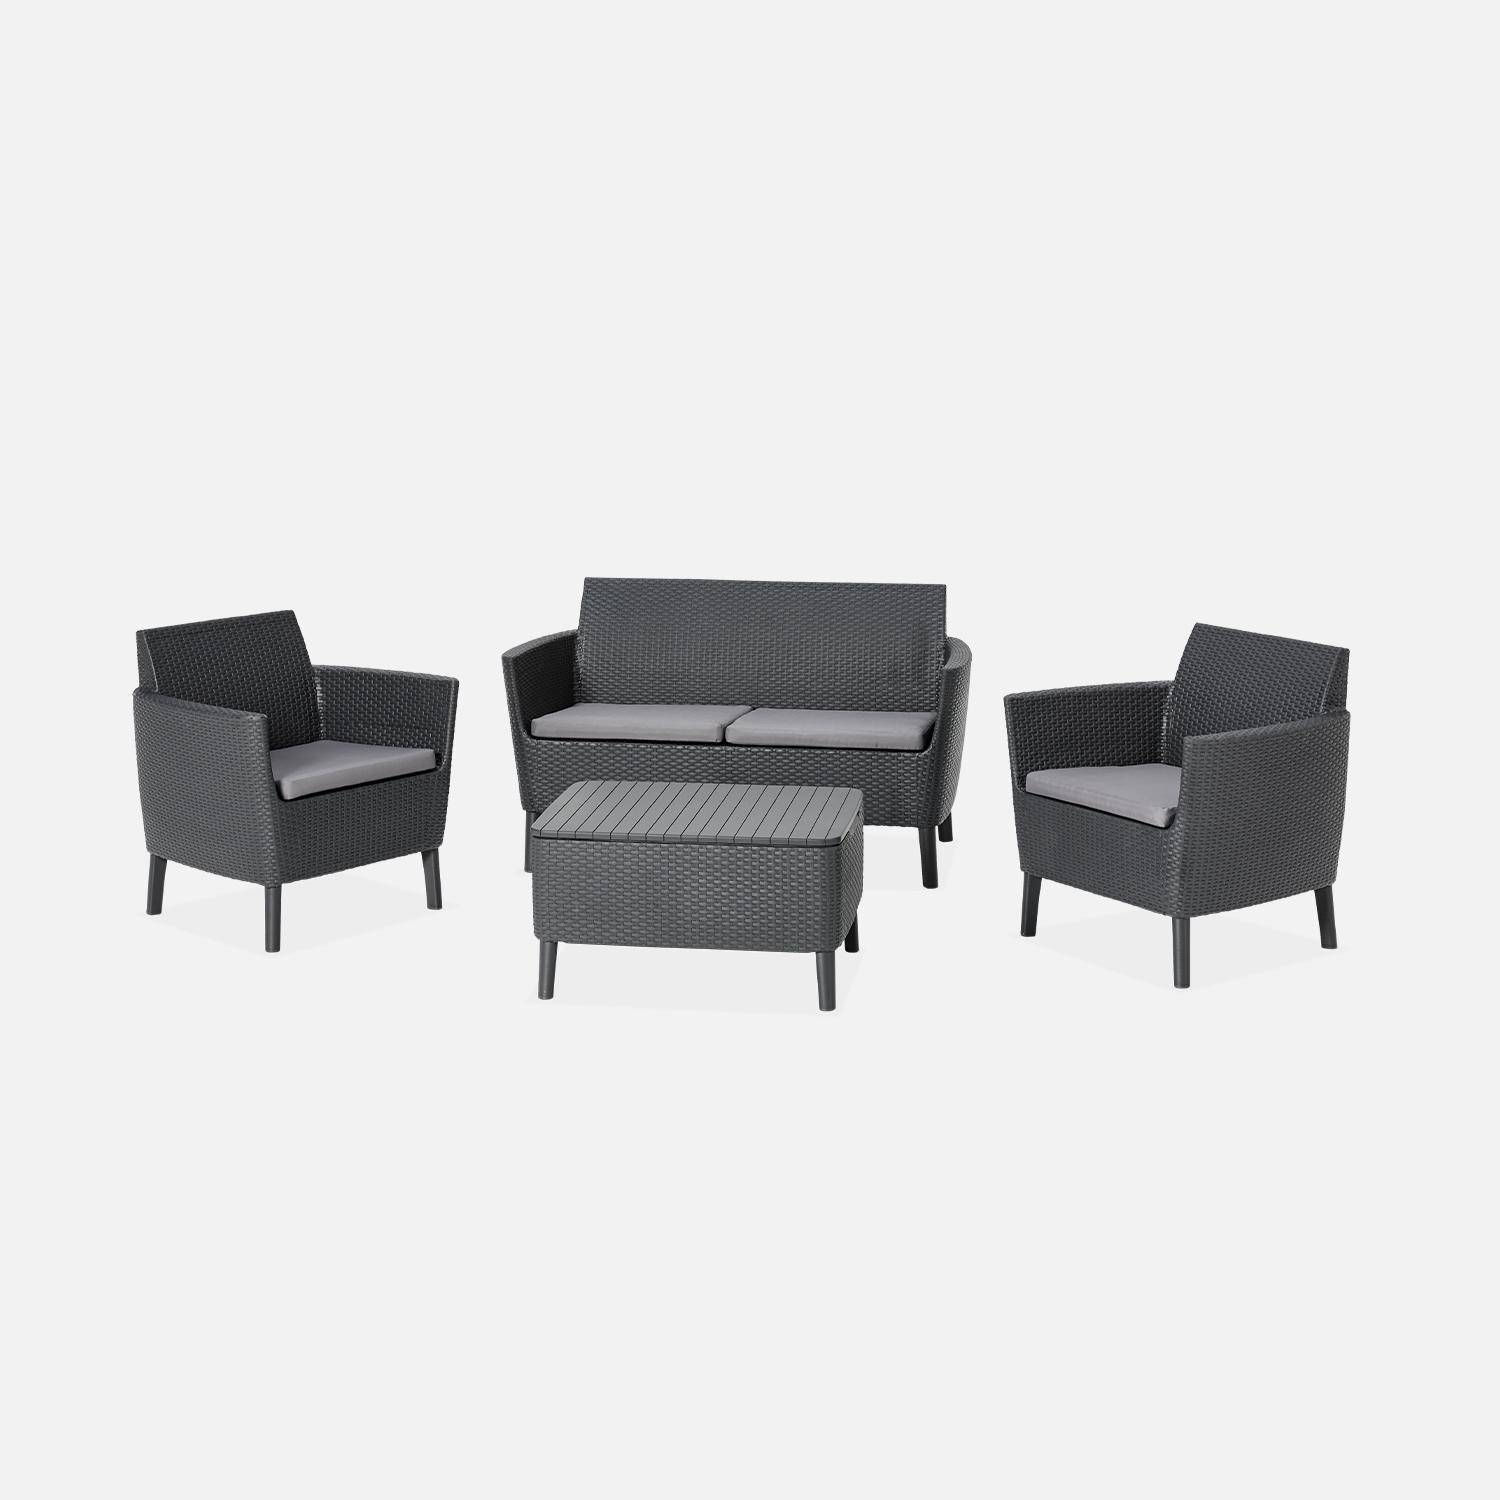 Loungeset van spuitgegoten kunsthars met imitatierotan detail, 4 zitplaatsen, een bank, twee fauteuils, een salontafel - grafiet/grijs  Photo2